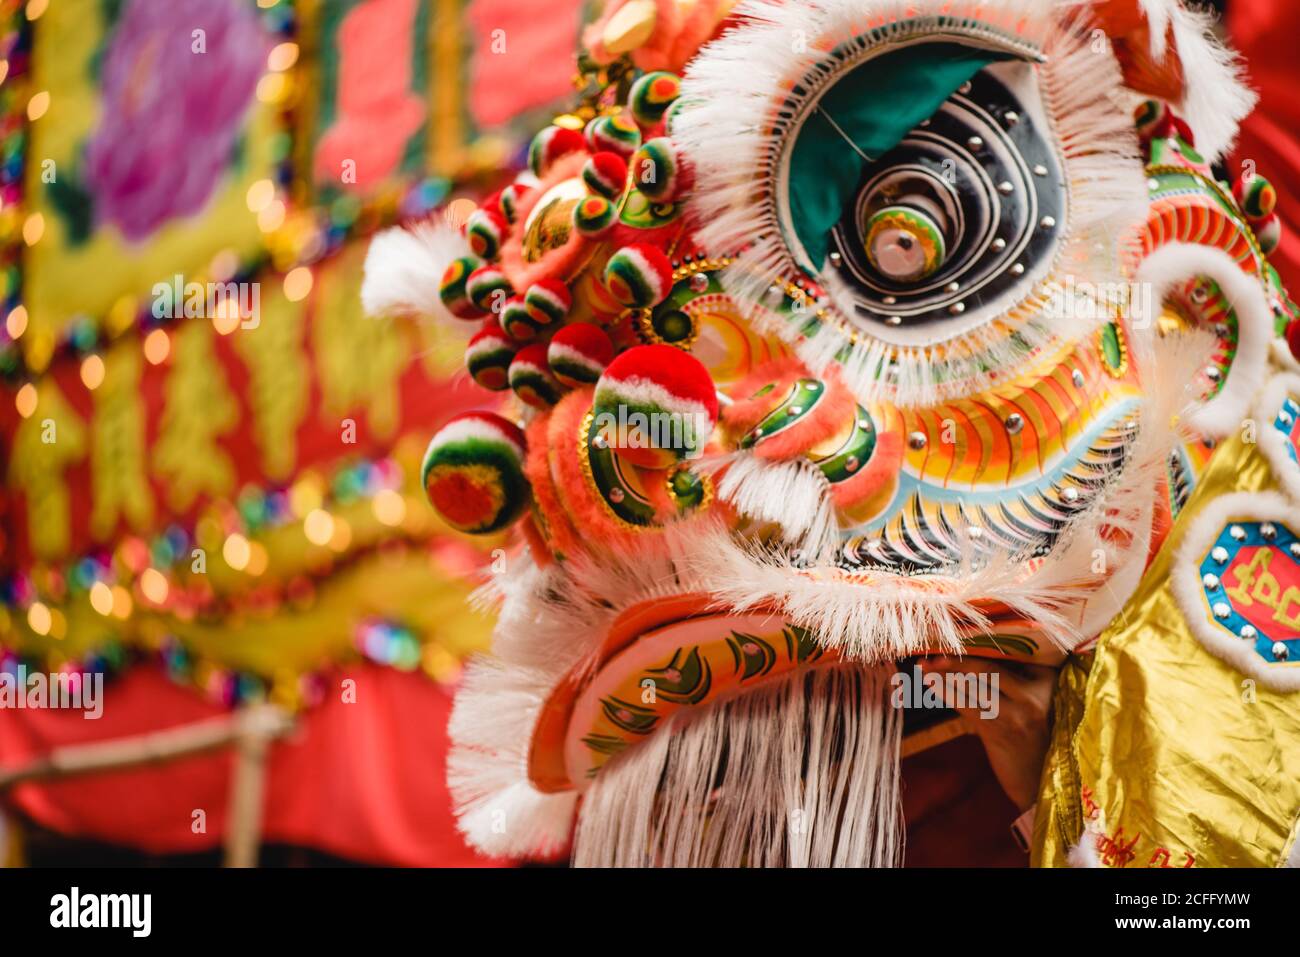 personne anonyme portant le costume de dragon coloré ornemental pendant la représentation Danse traditionnelle du Dragon Banque D'Images